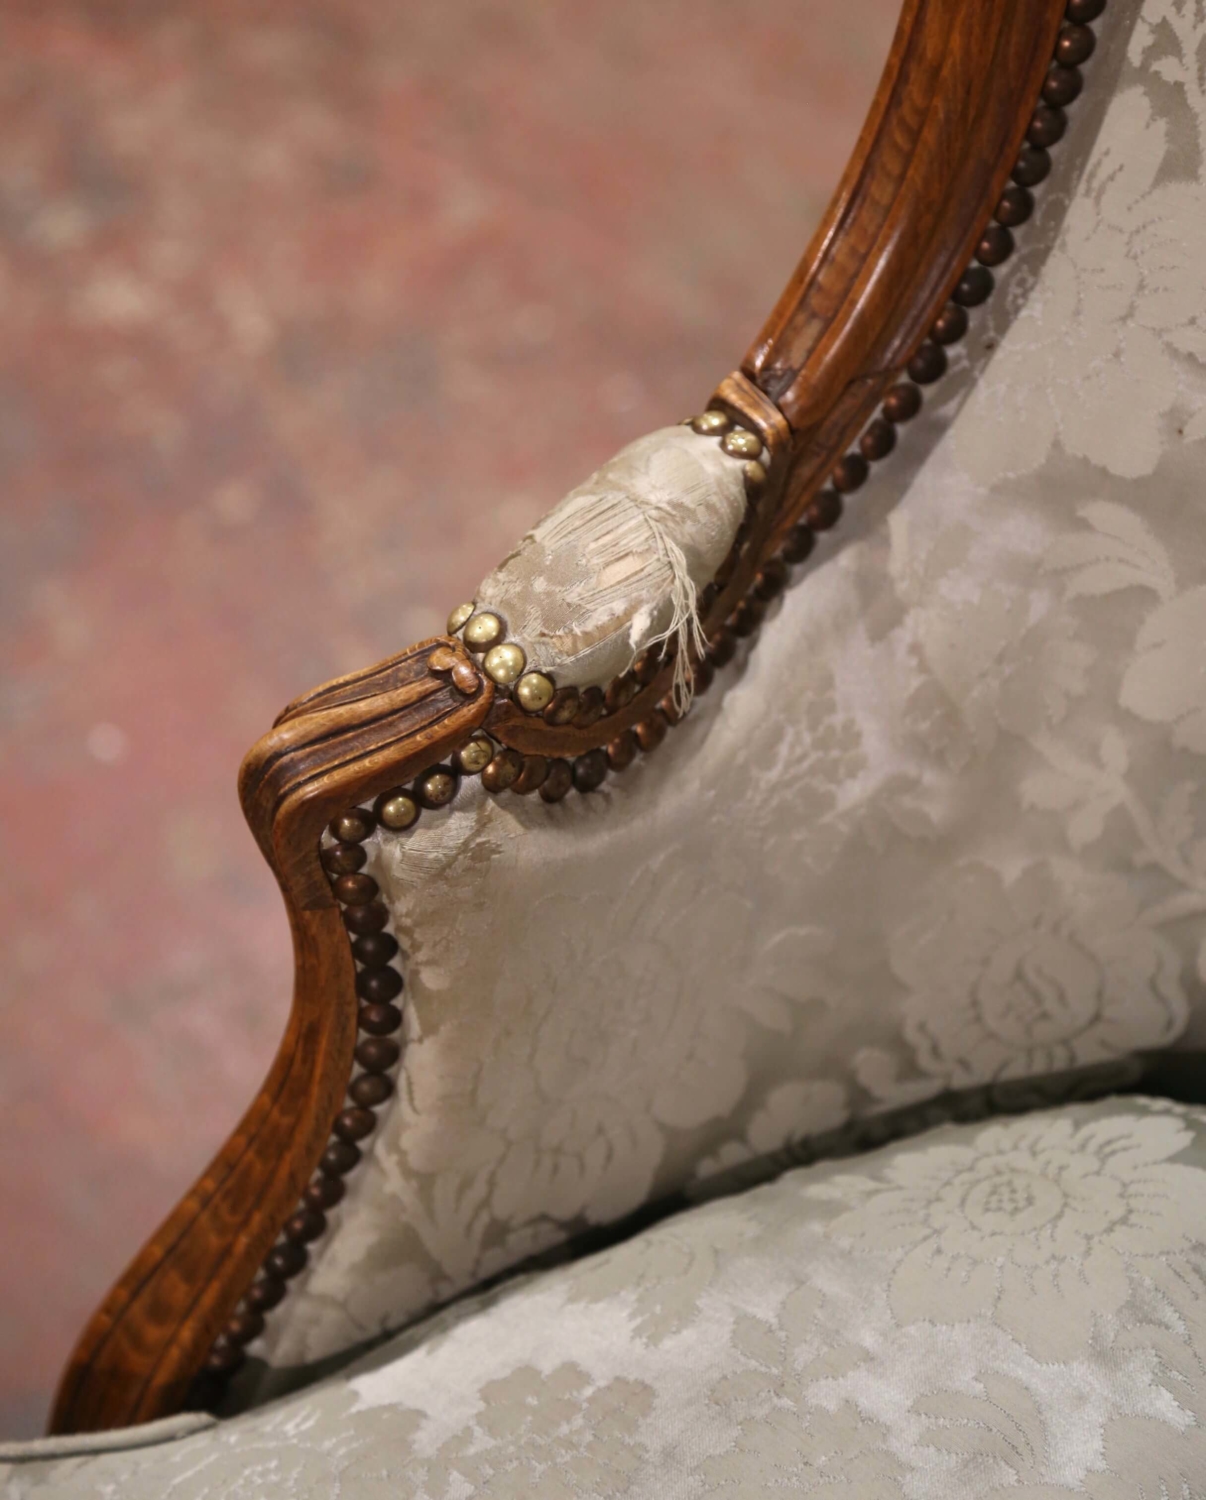 Antique French Louis XV Walnut Gold Velvet Tapestry Sofa plus 4